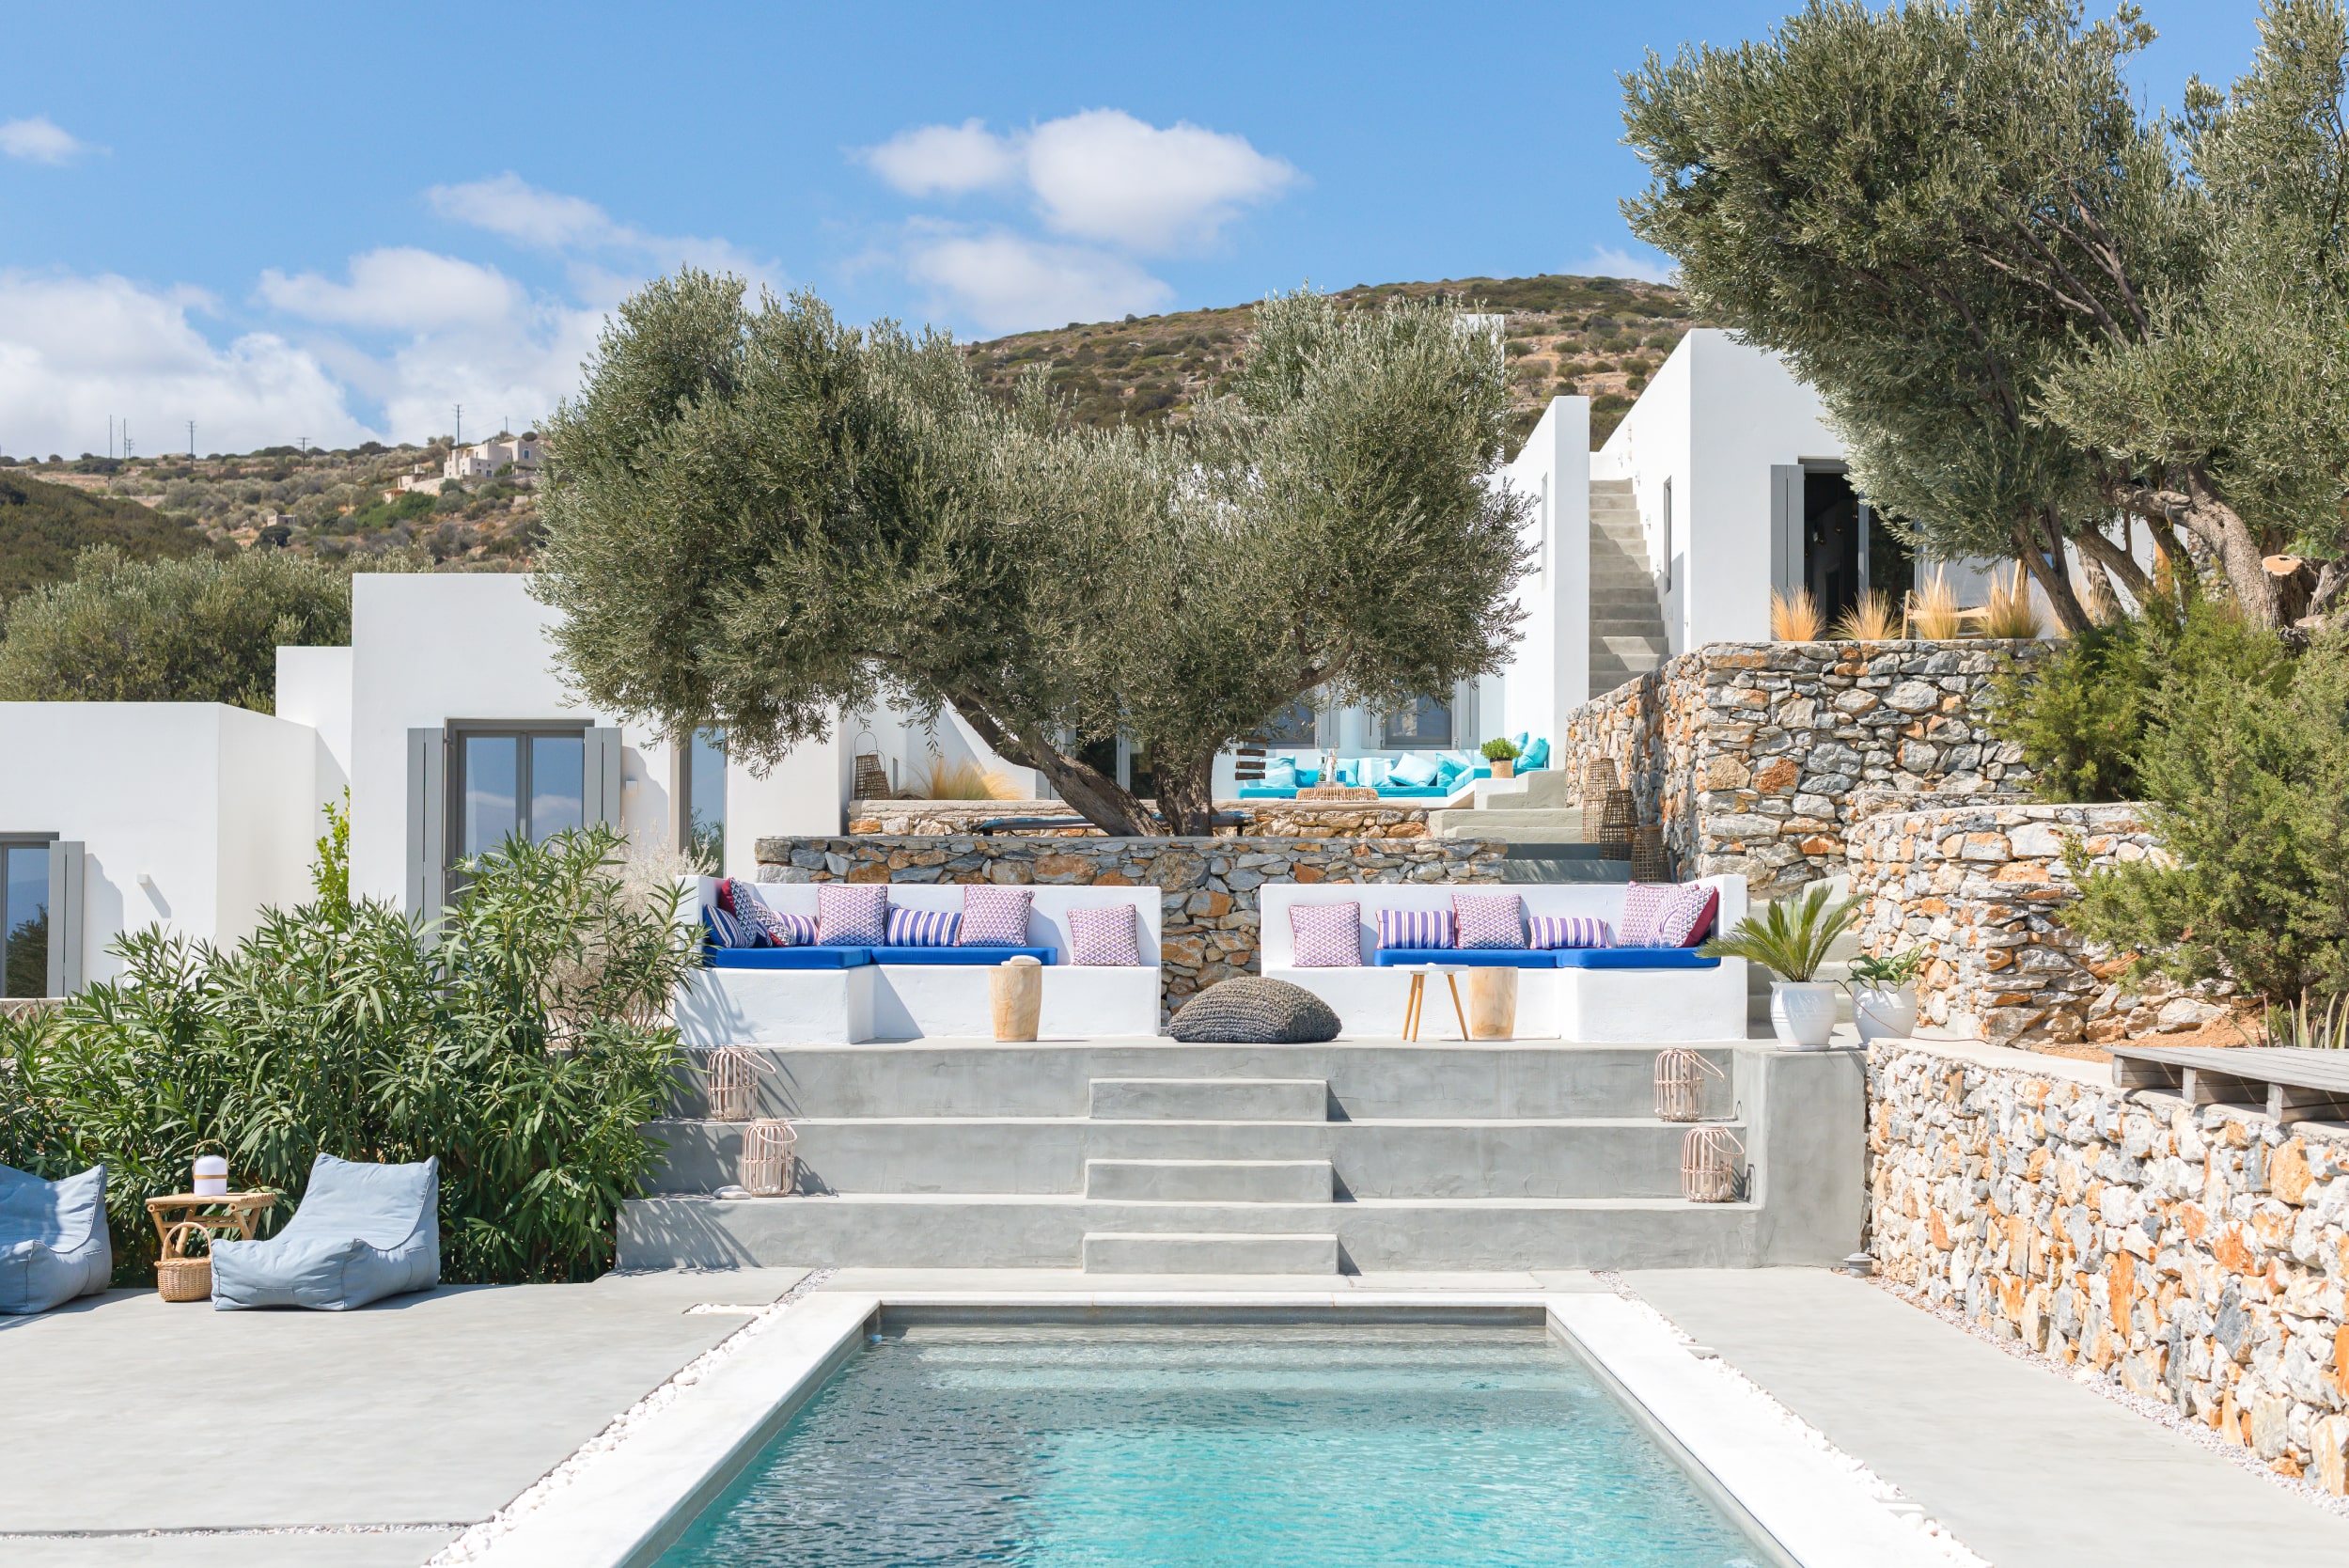 Vent bohème sur la Villa Philia à Paros, entretien avec Maxime et Christine Belveze